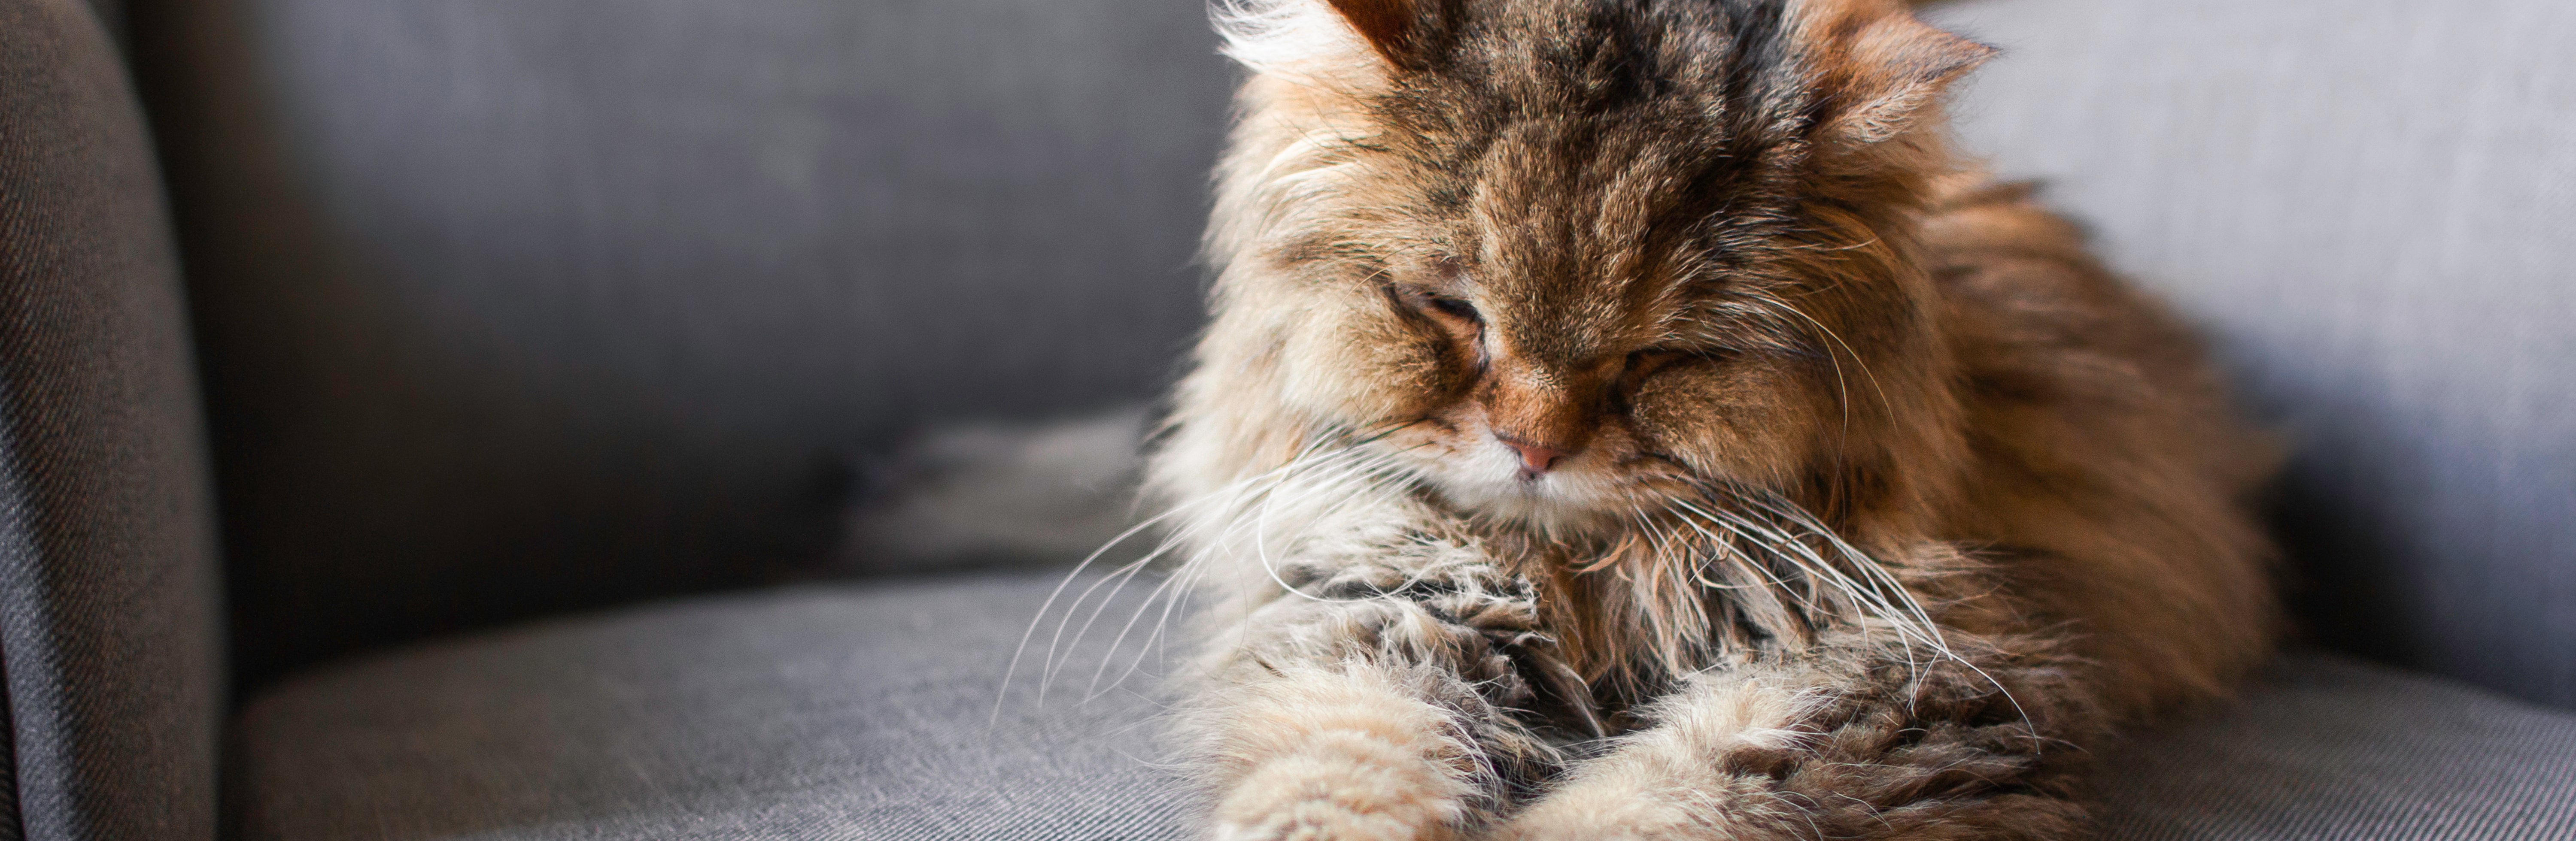 Verzorging van oude katten: aandacht voor hun specifieke